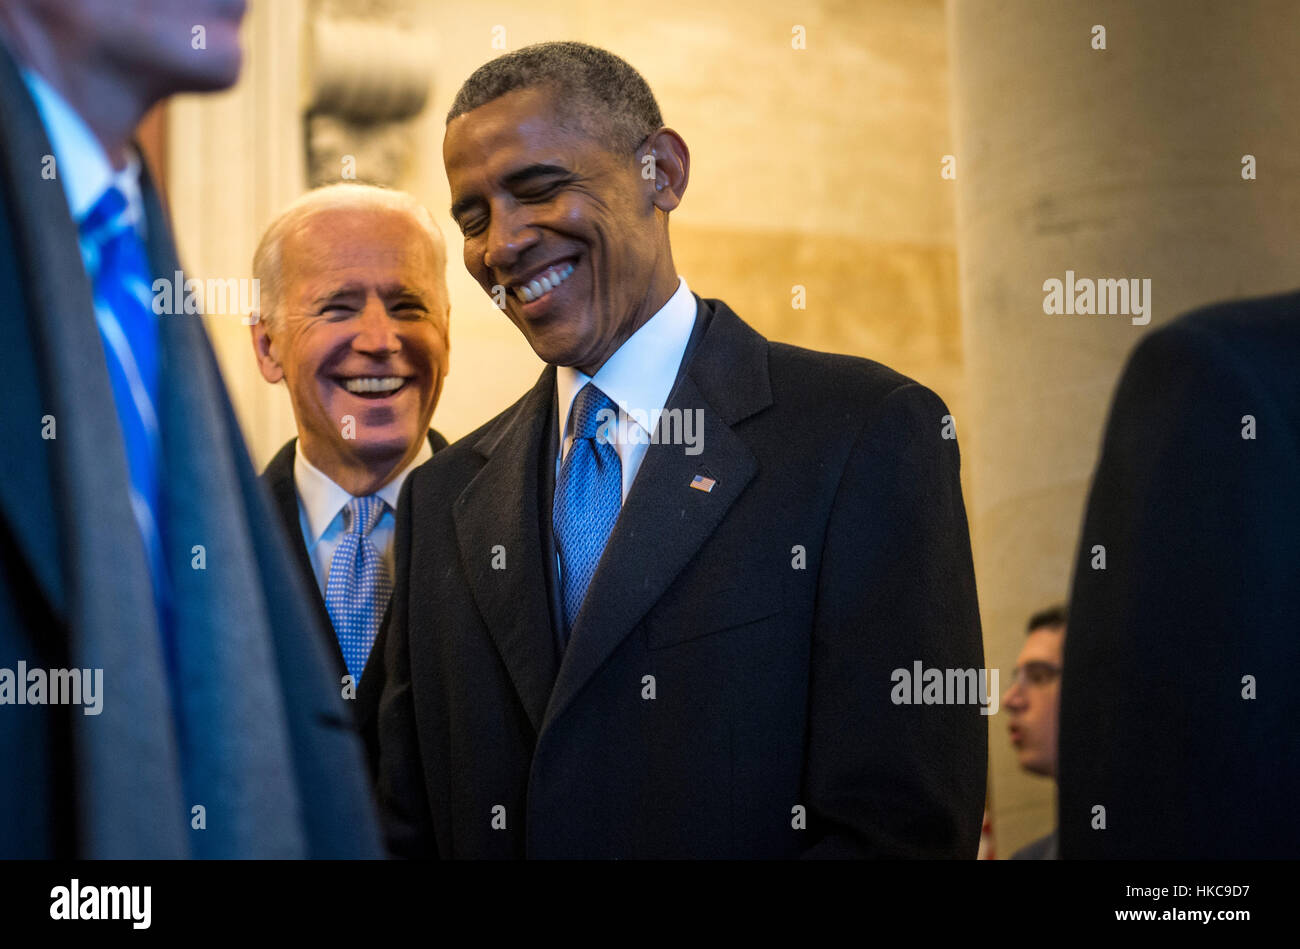 Ehemaliger US-Präsident Barack Obama und ehemaliger Vize-Präsident Joe Biden teilen einen lachen während des Wartens auf das Kapitol für die Abschiedszeremonie während der 58. Presidential Inauguration 20. Januar 2017 in Washington, DC zu beenden. Stockfoto